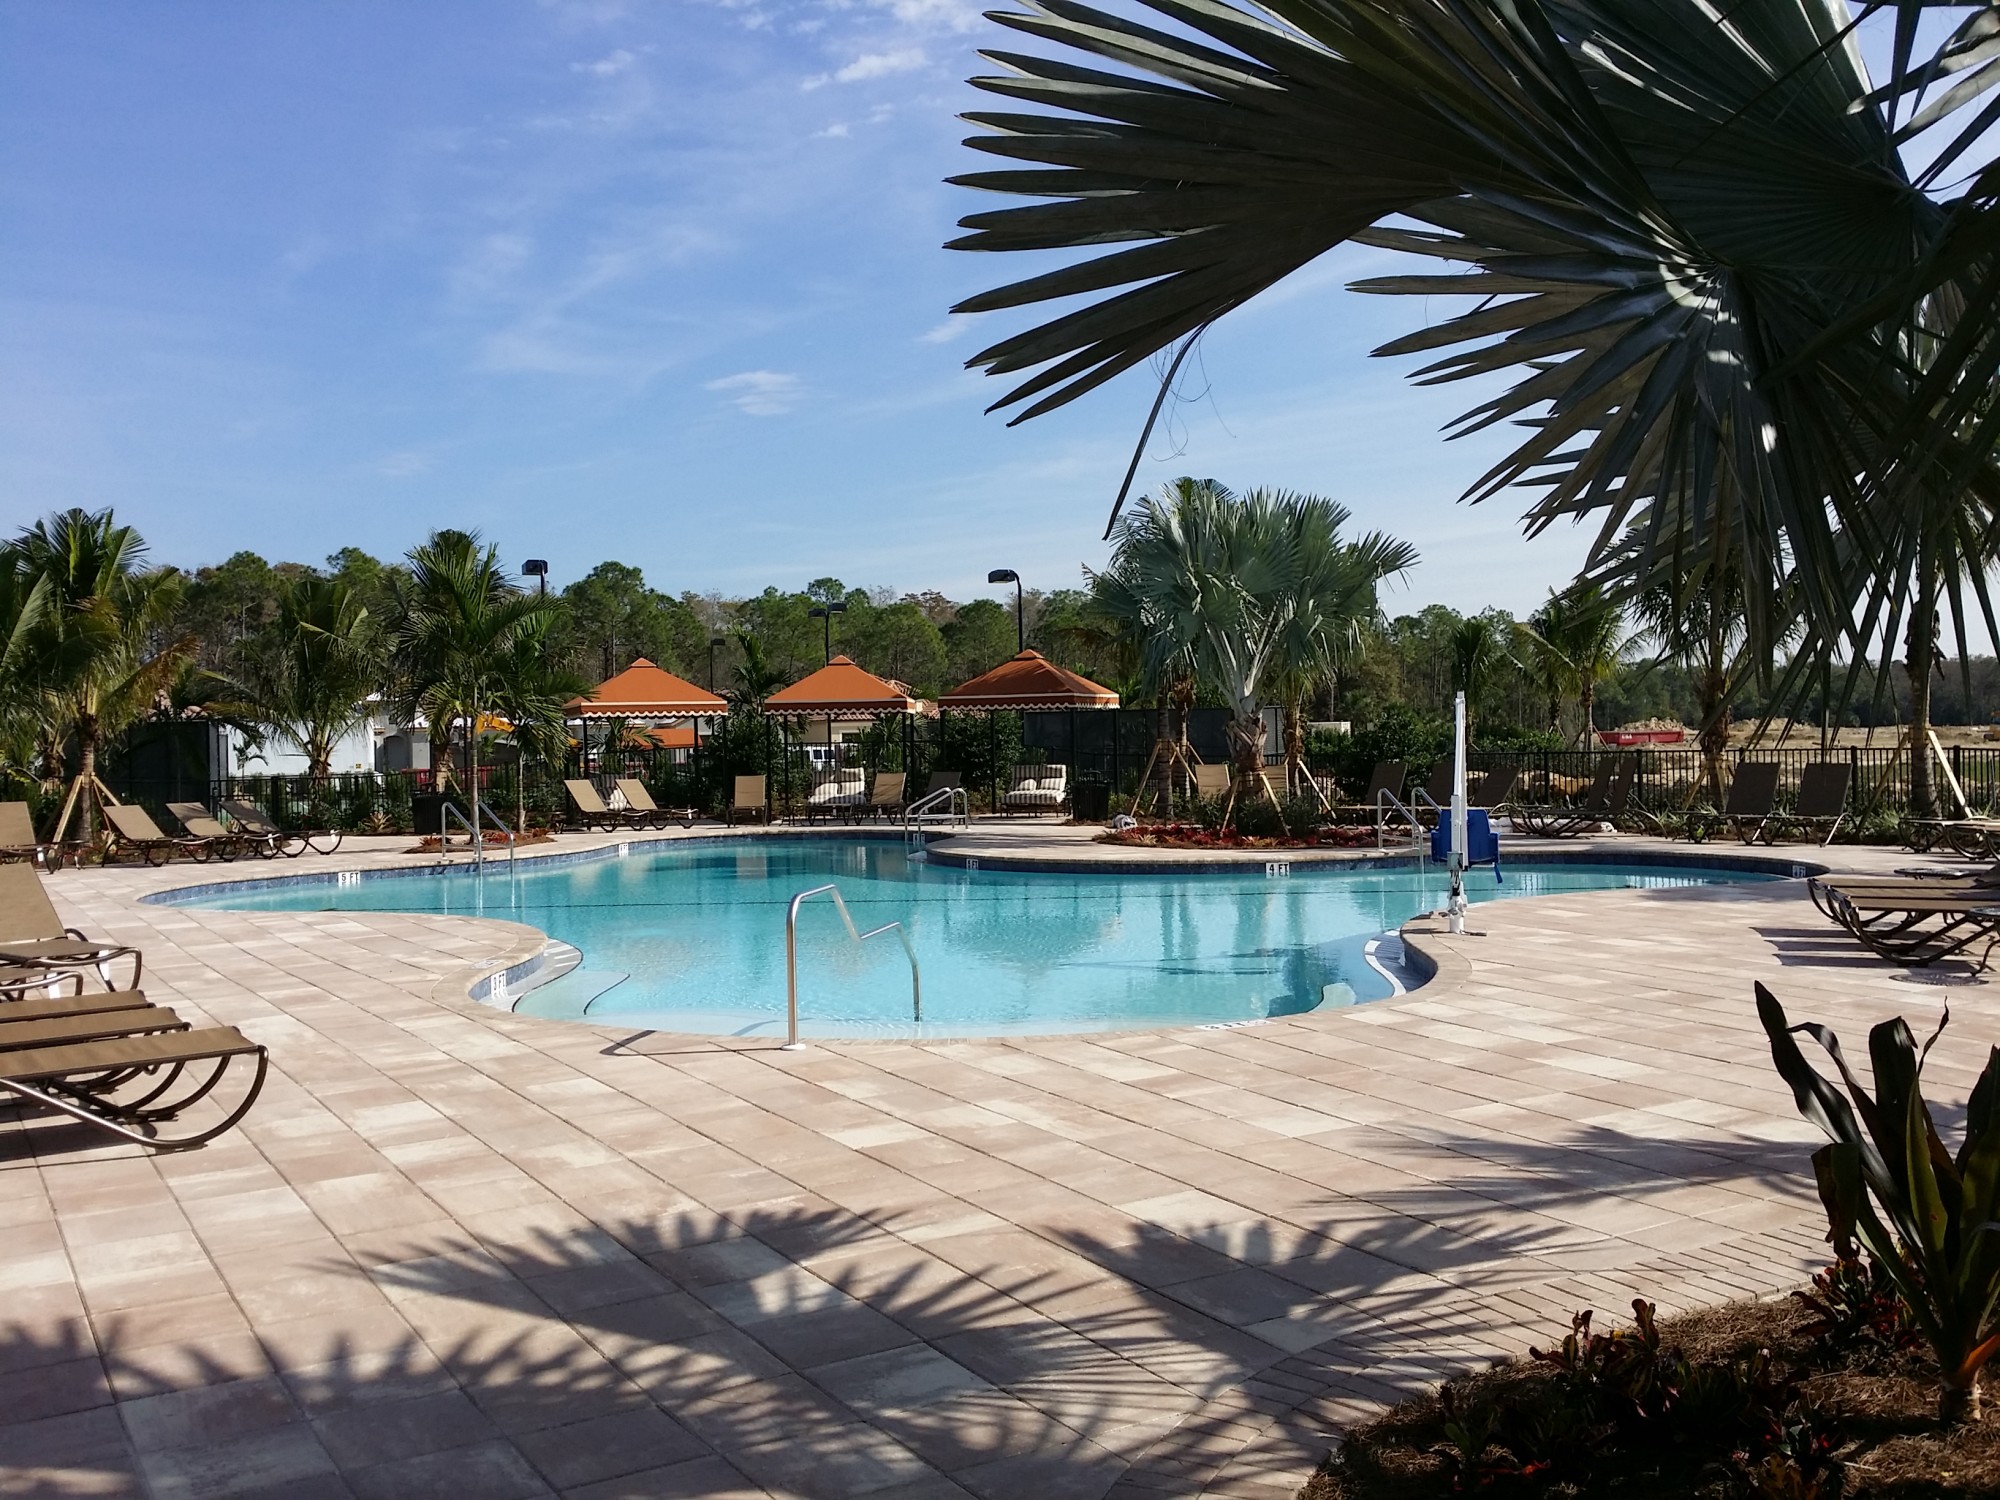 Sensational Resort Pool!